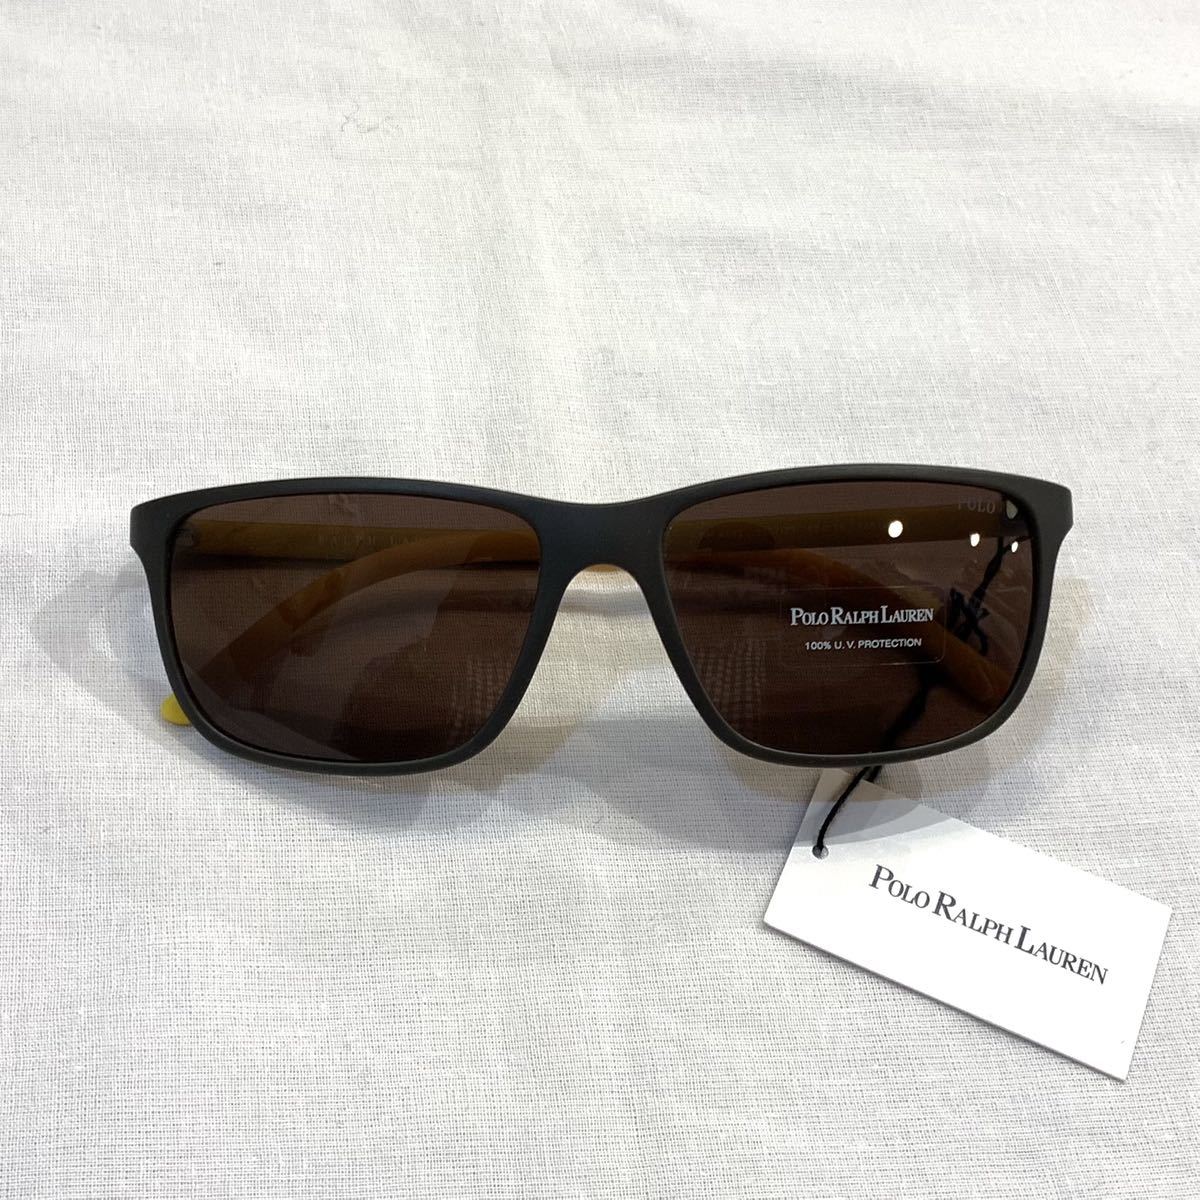  beautiful goods POLO RALPH LAUREN SUNGLASS Polo Ralph Lauren sunglasses plastic PH4092 5507/73 58*16 145